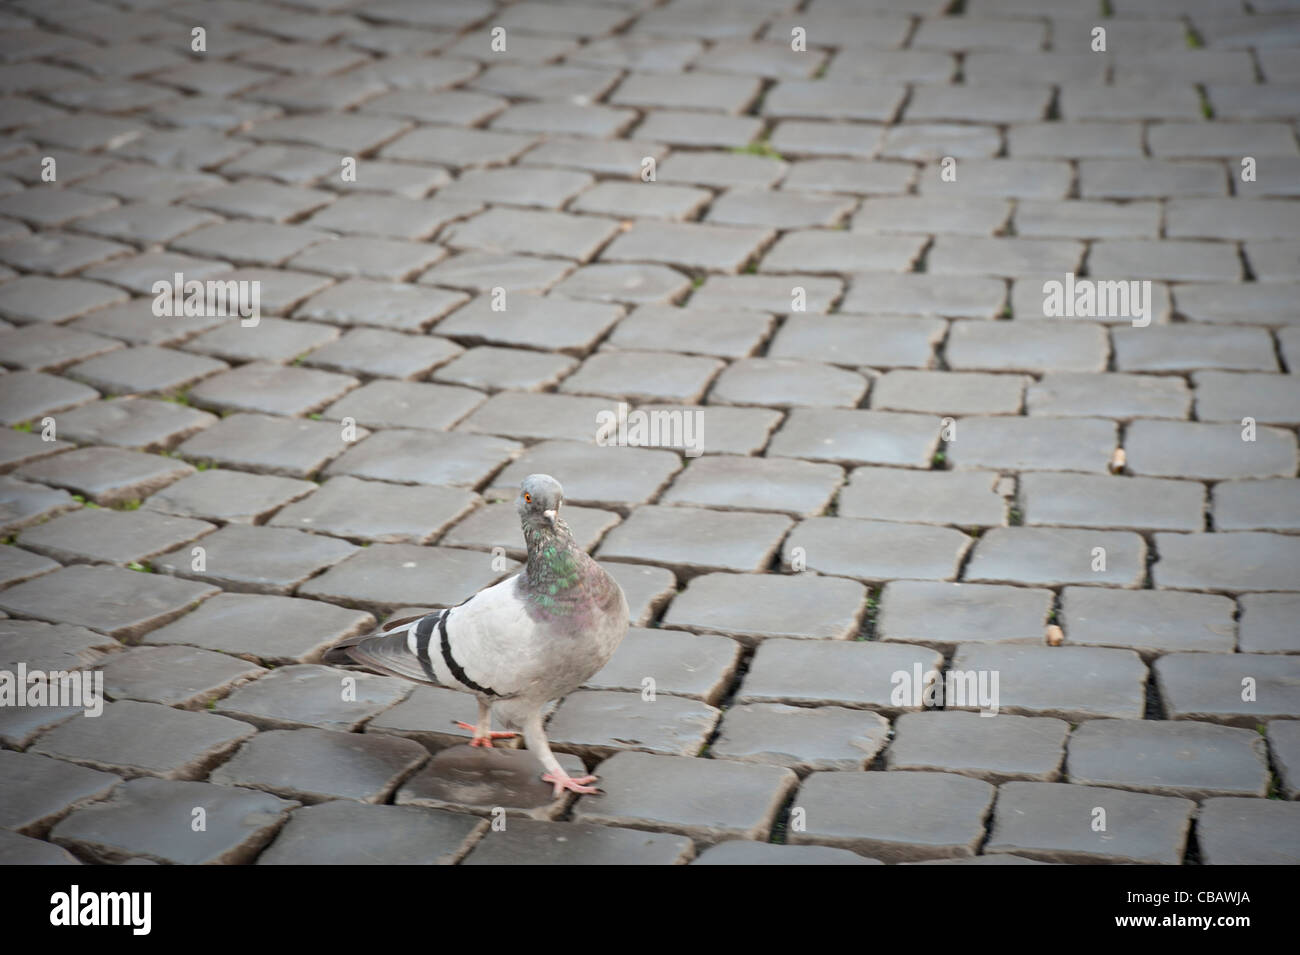 Pigeon marche dans des rues de Rome Banque D'Images